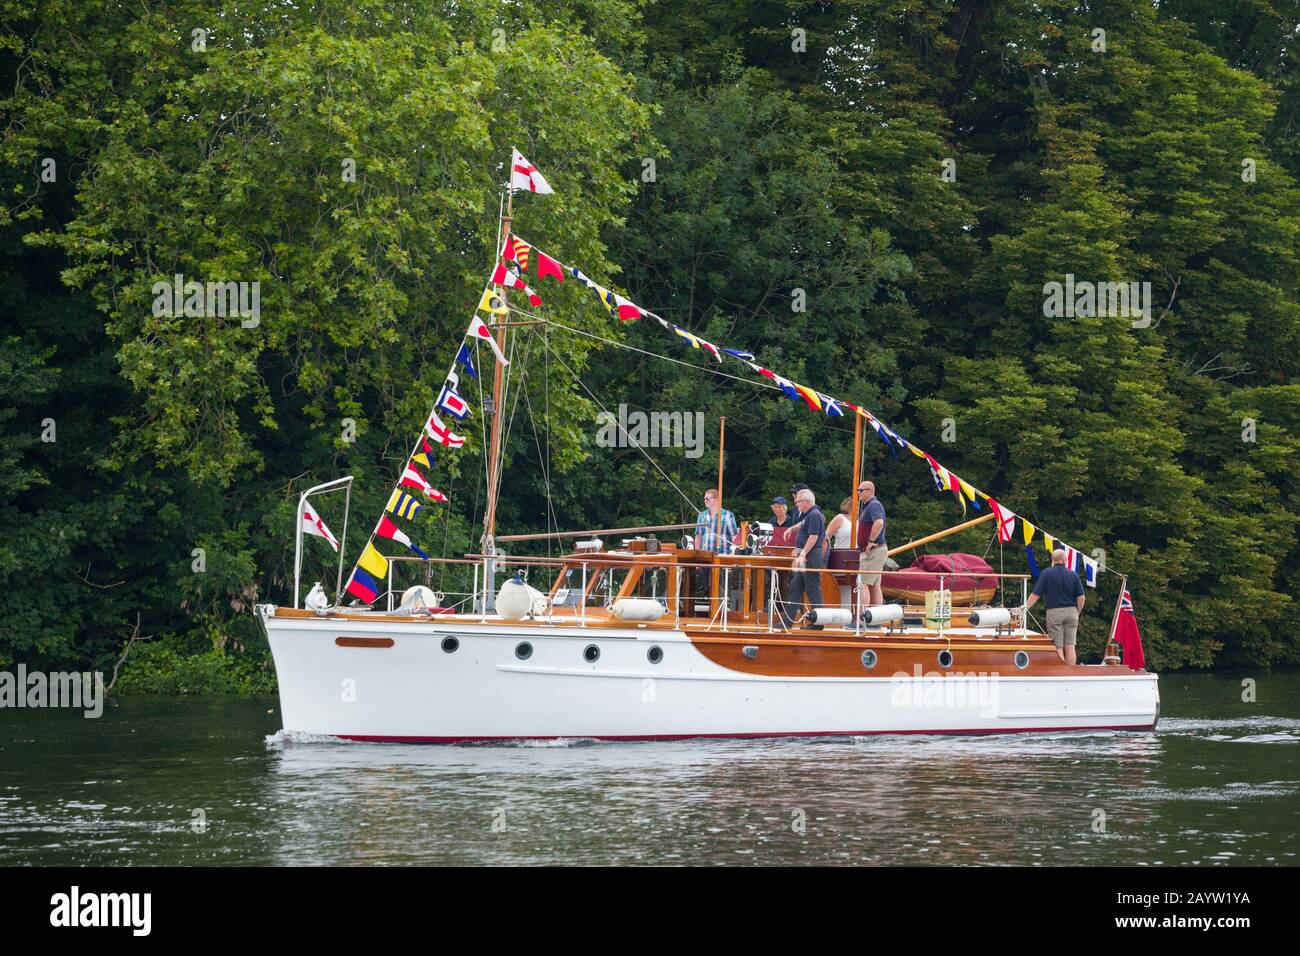 Le Petit bateau Dunkerque 'Lady Lou' sur la Tamise près de Henley-on-Thames avec des petits pains et des drapeaux Banque D'Images